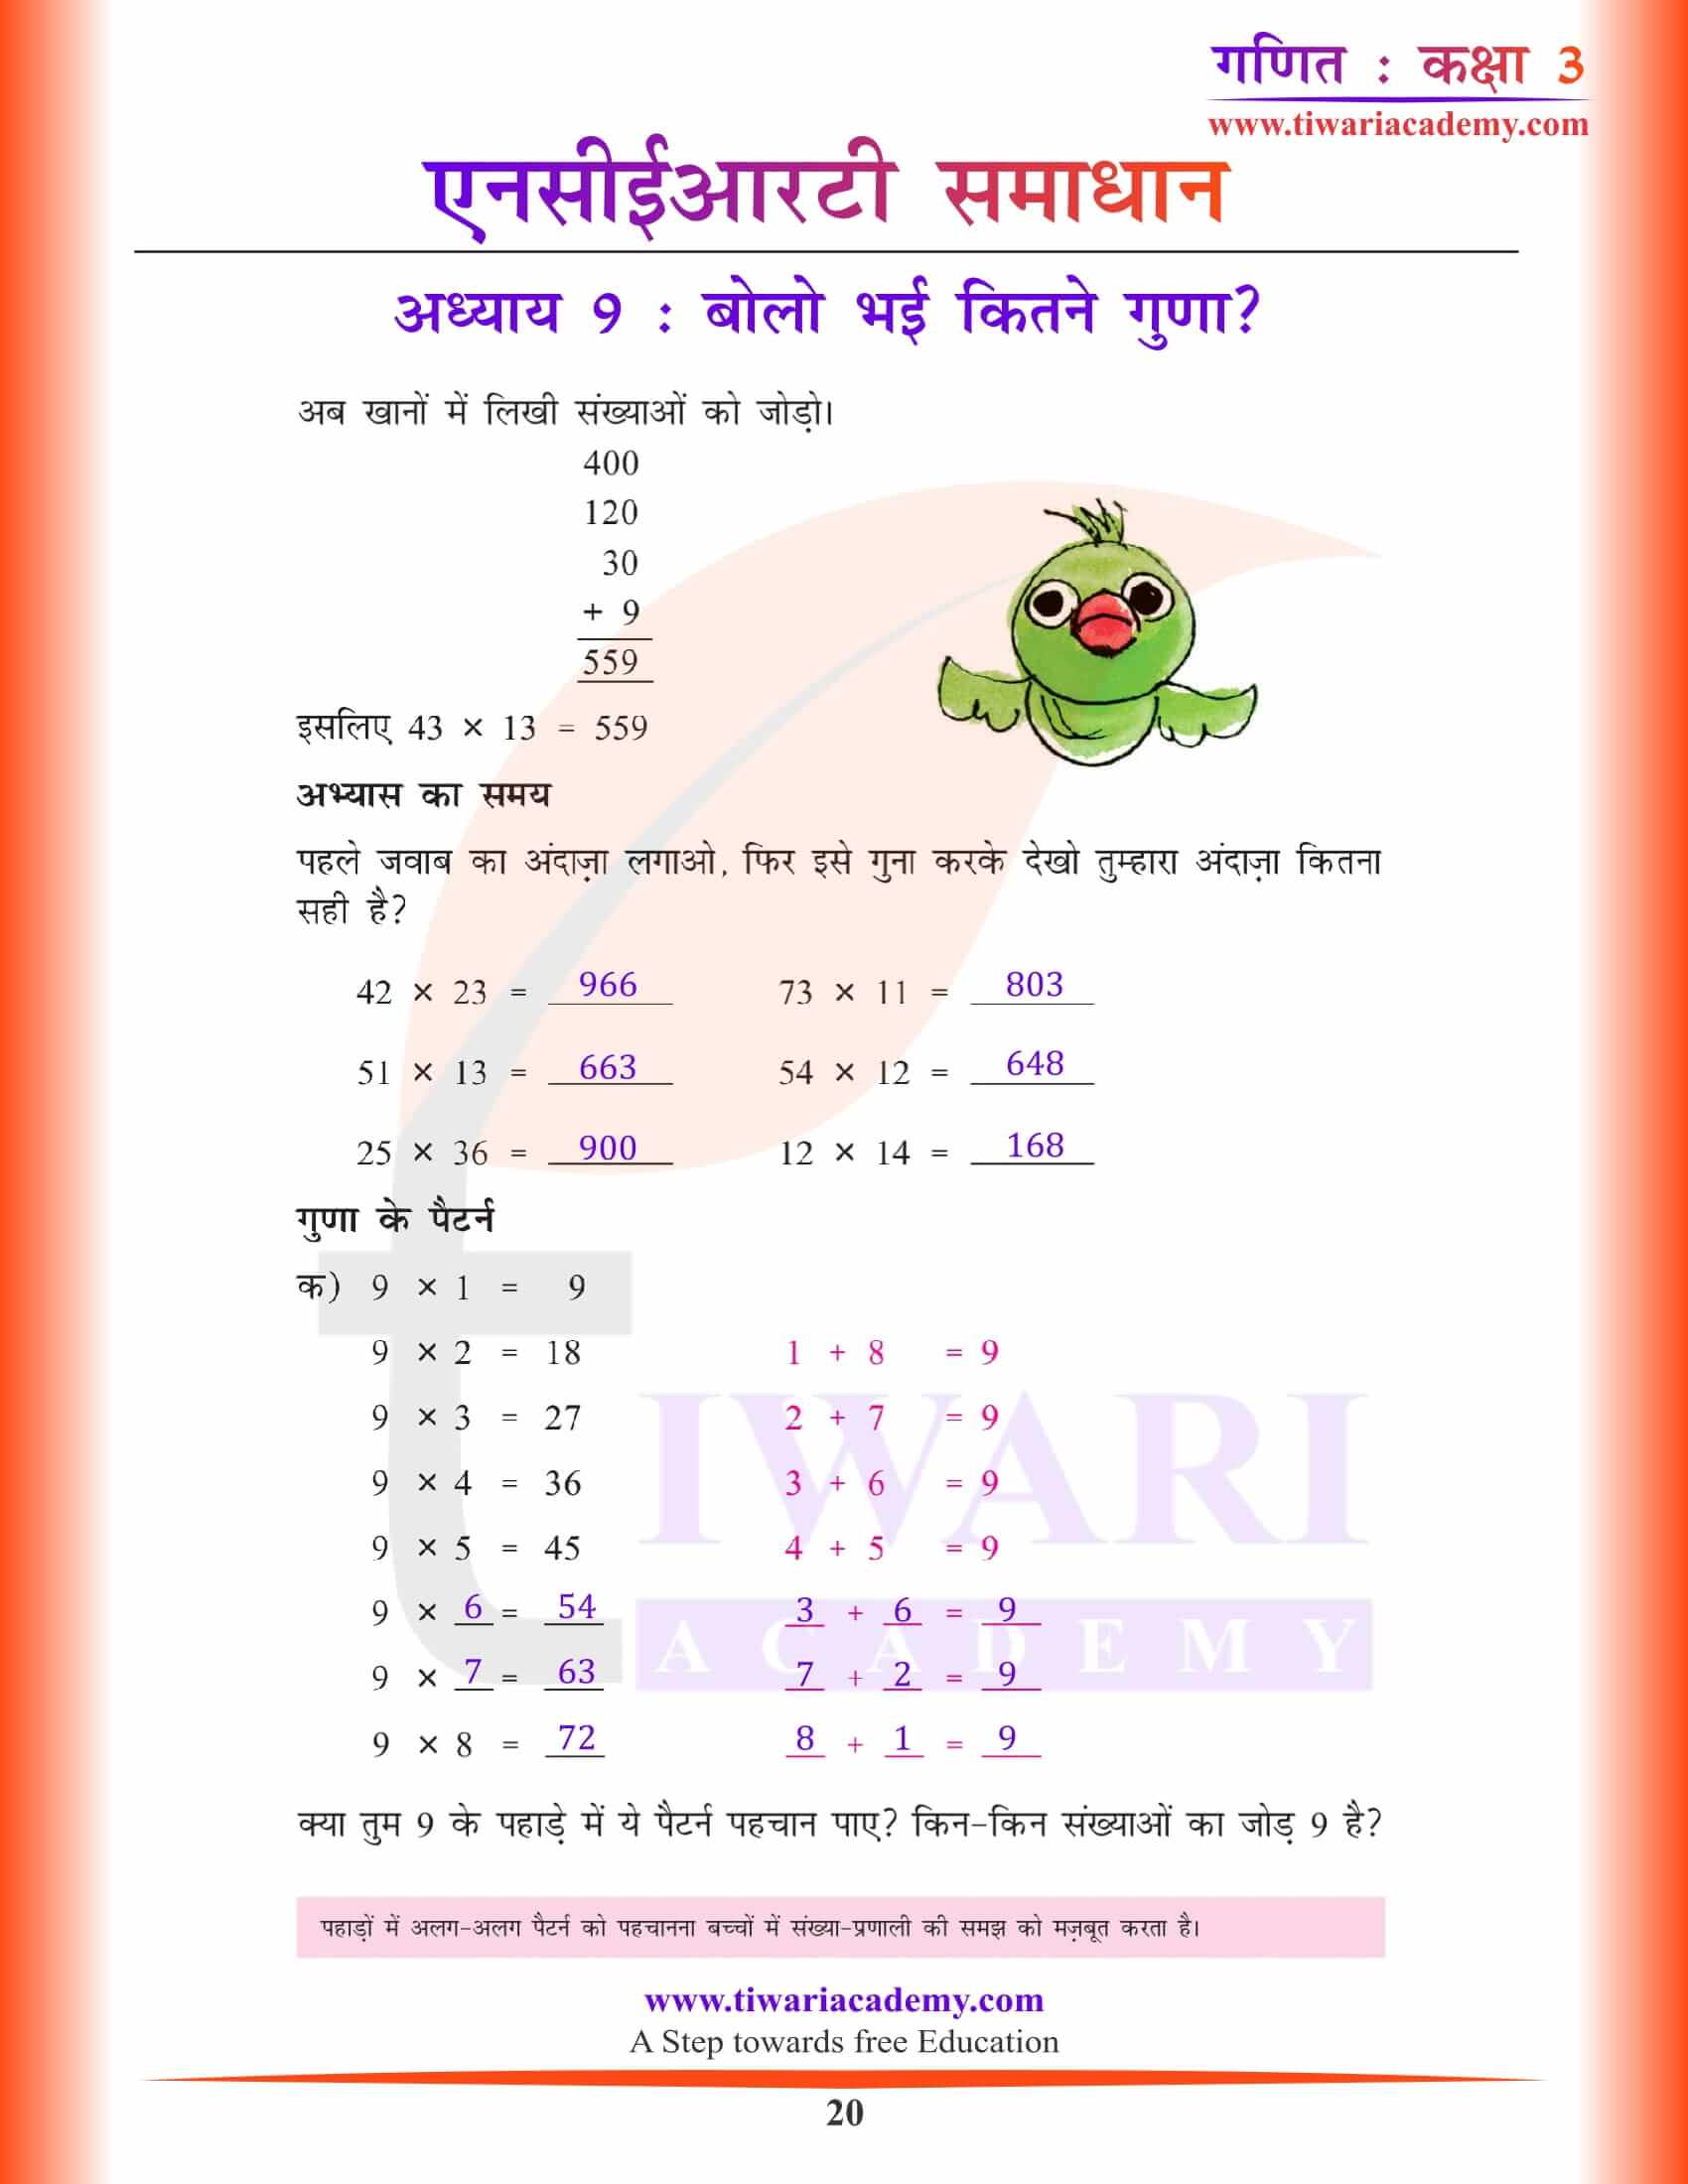 एनसीईआरटी समाधान कक्षा 3 गणित अध्याय 9 सभी सवालों के हल हिंदी में